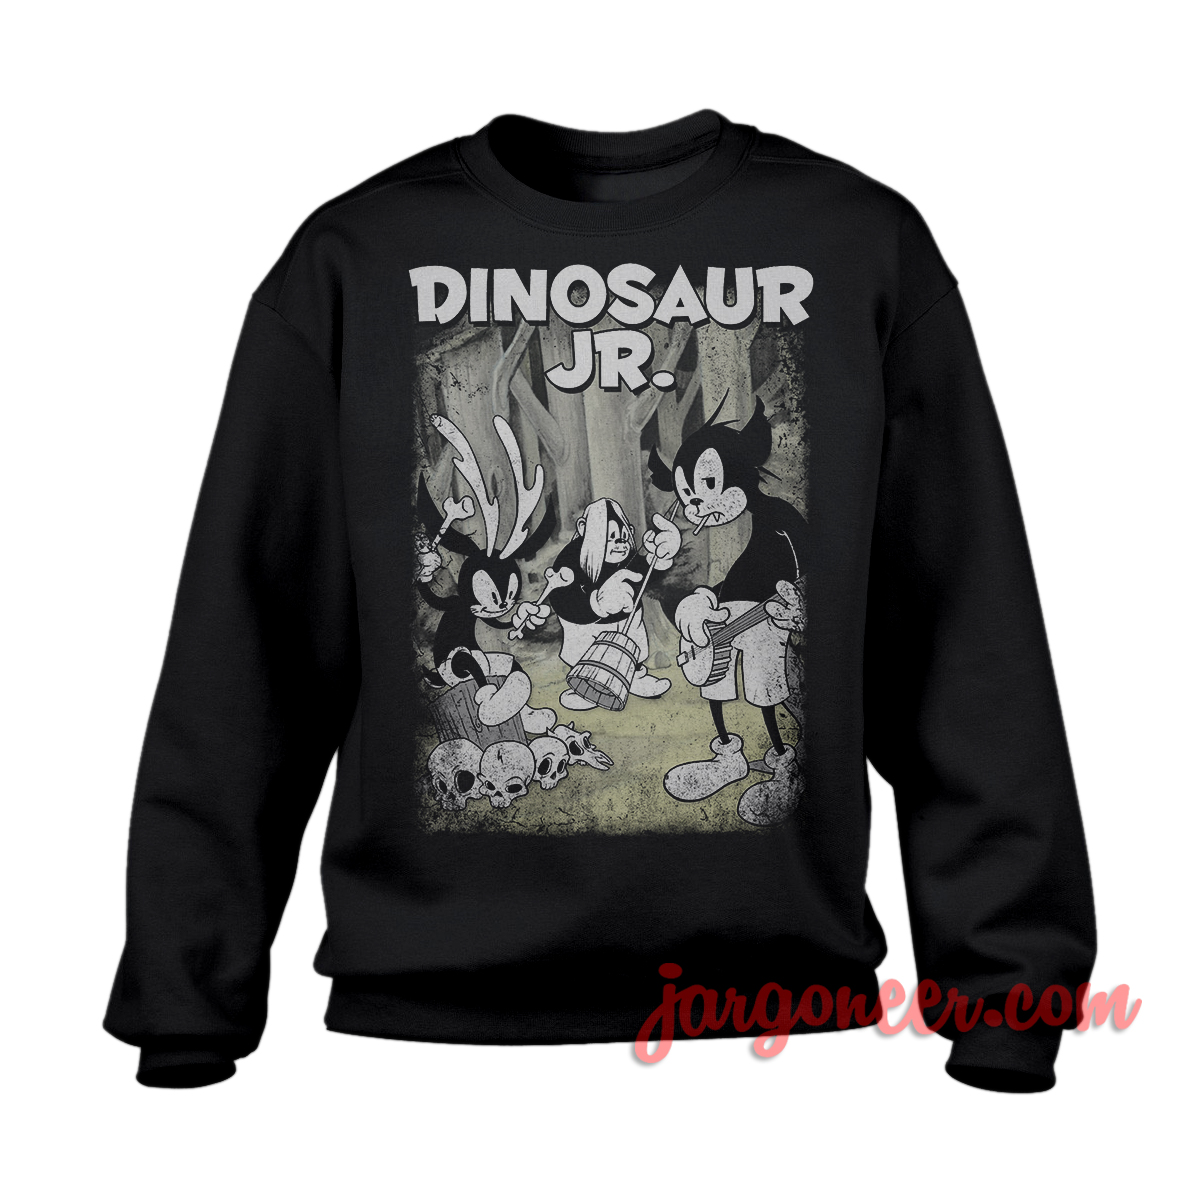 Dinosaur Jr Animaniac Black SS - Shop Unique Graphic Cool Shirt Designs